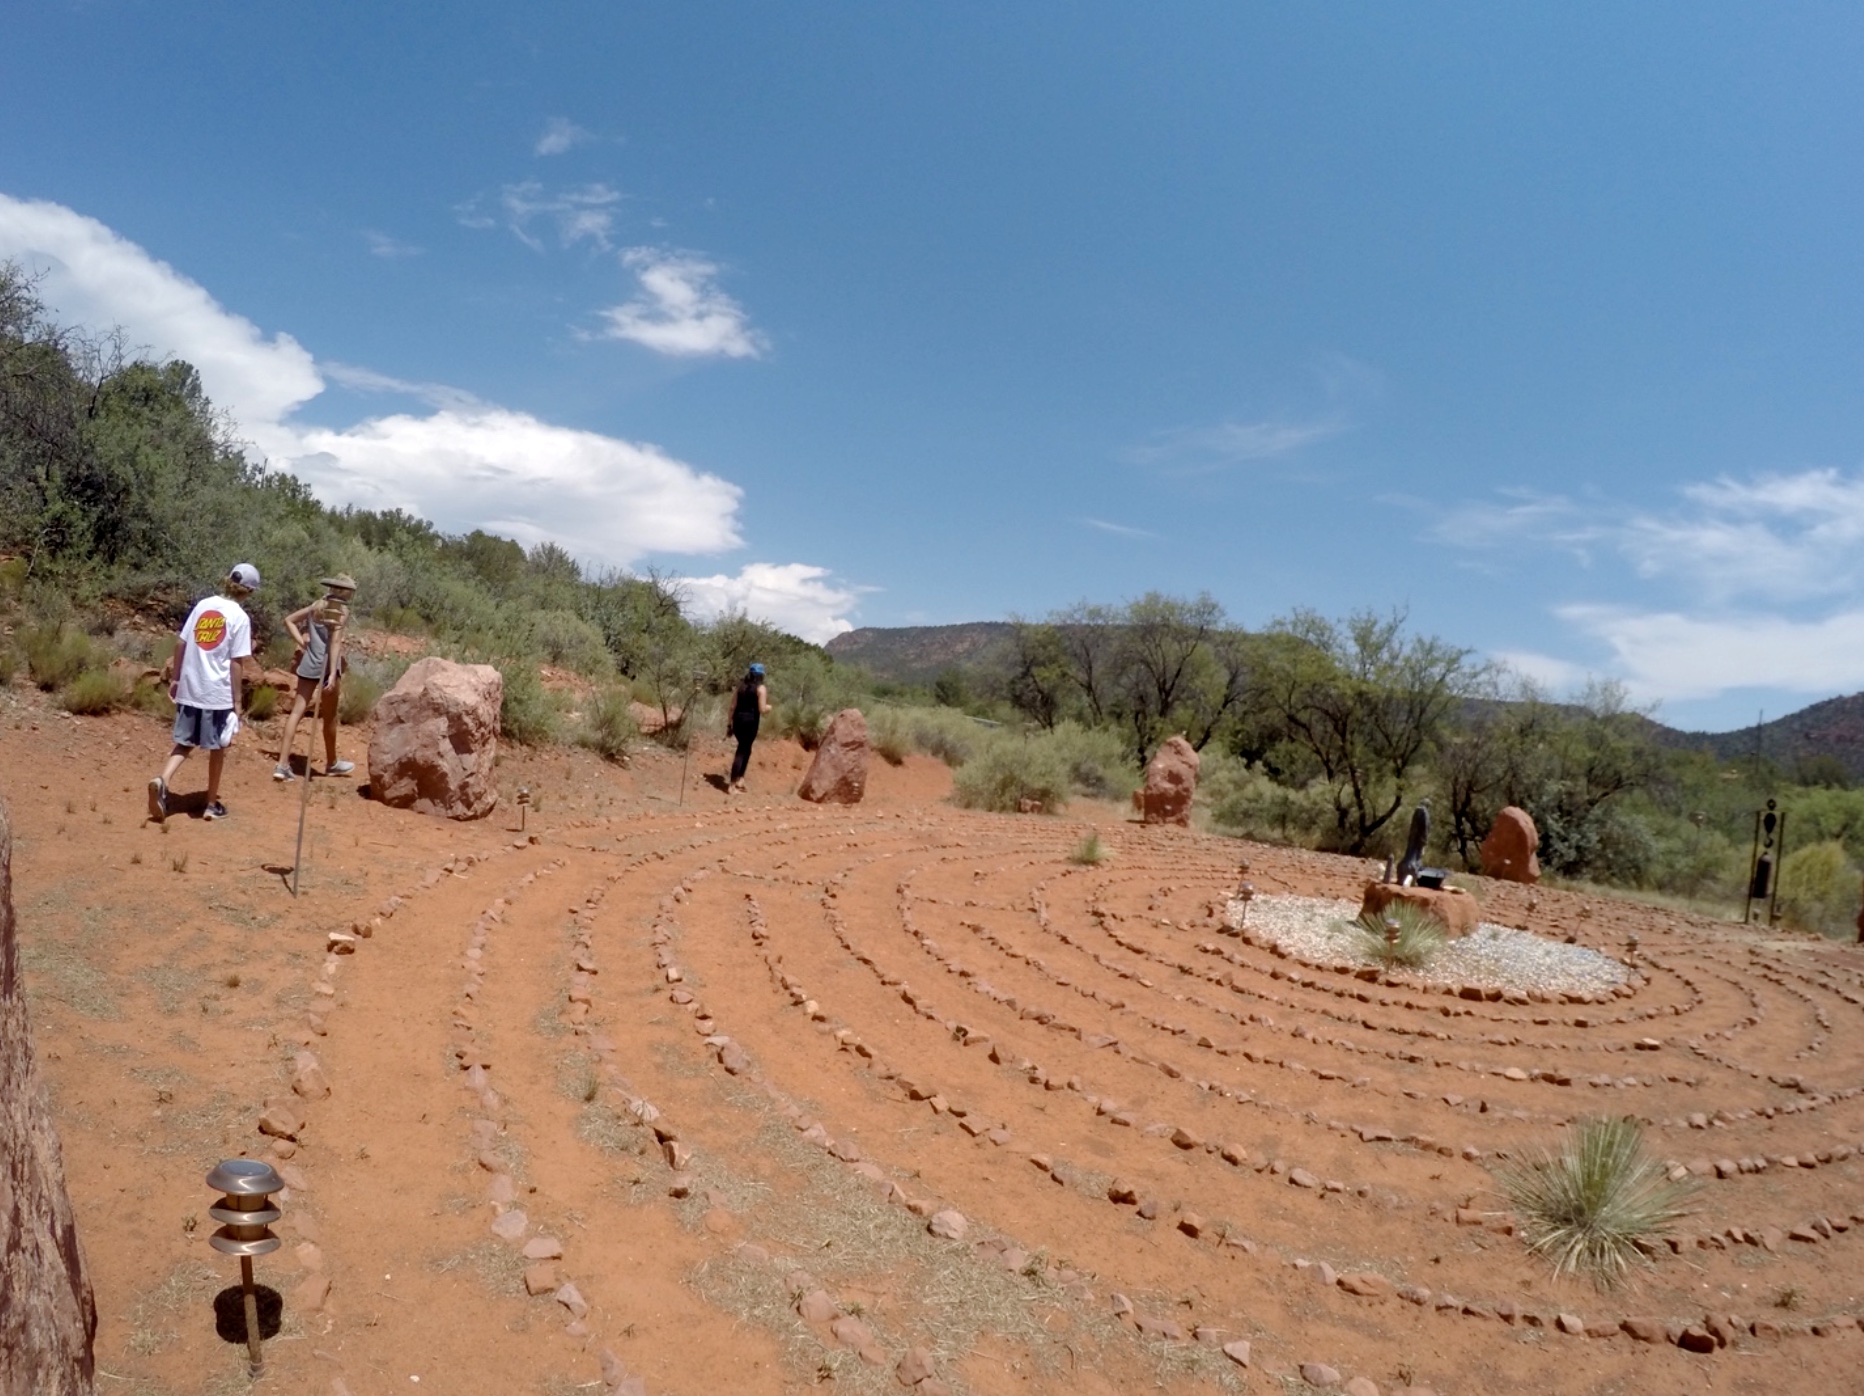 People walking a backyard labyrinth in desert landscape.